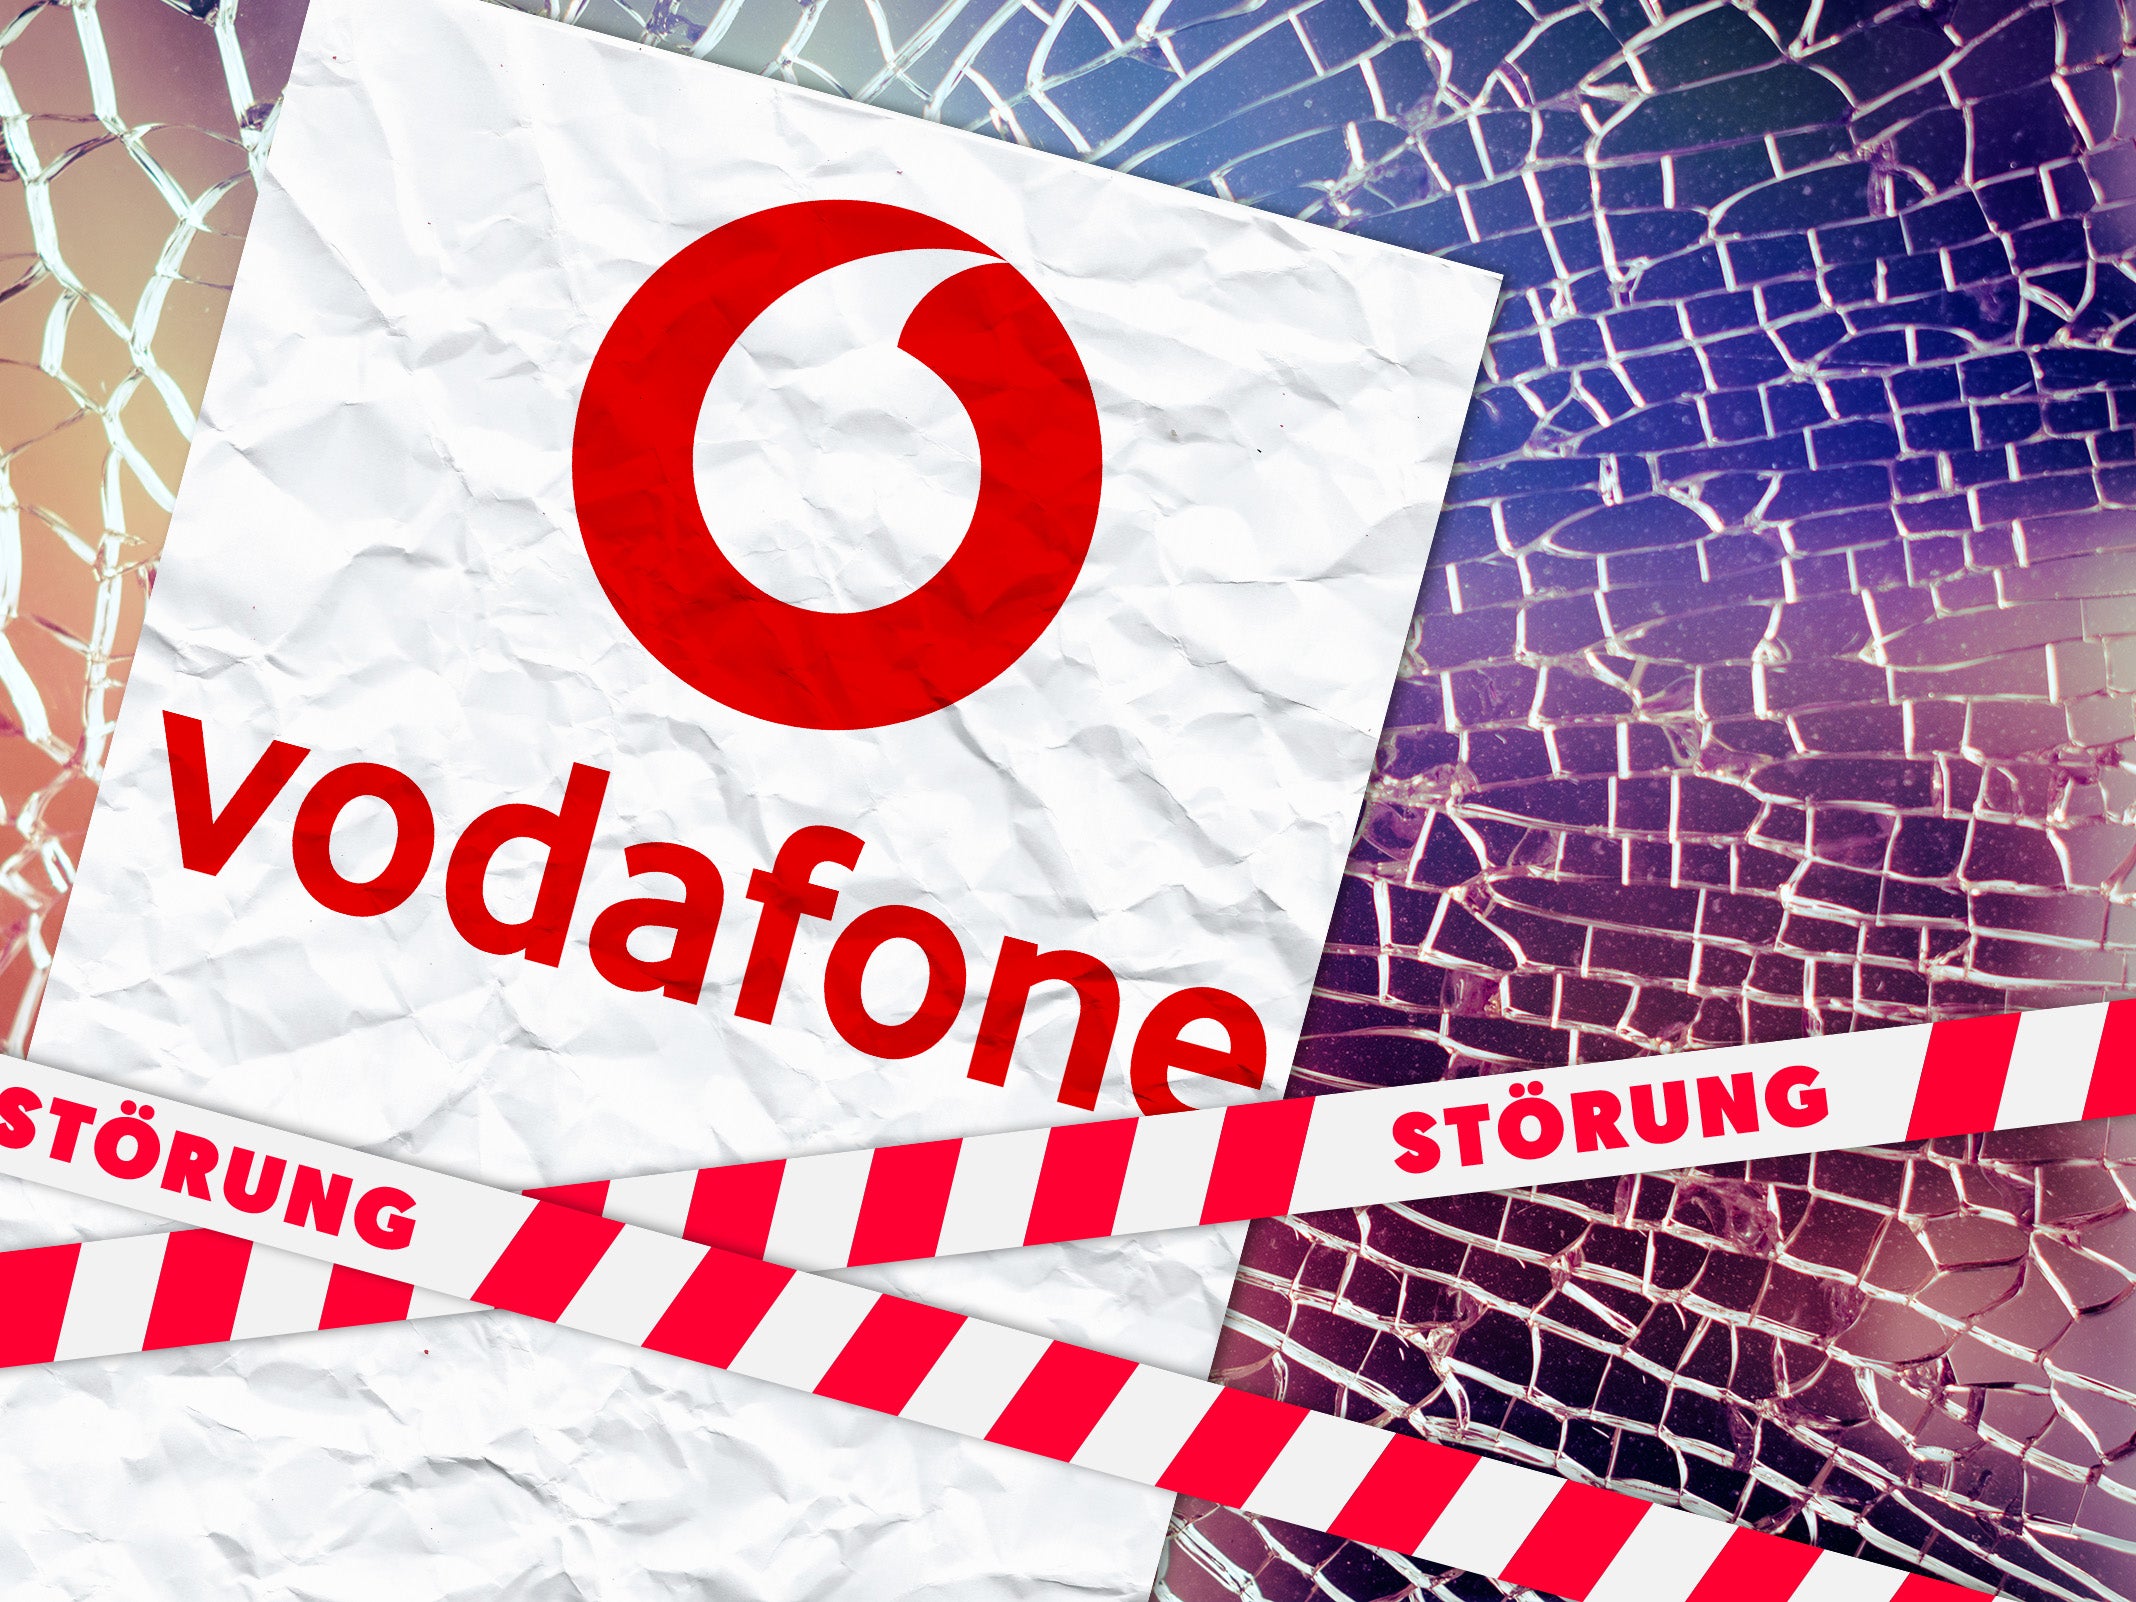 Vodafone störung augsburg